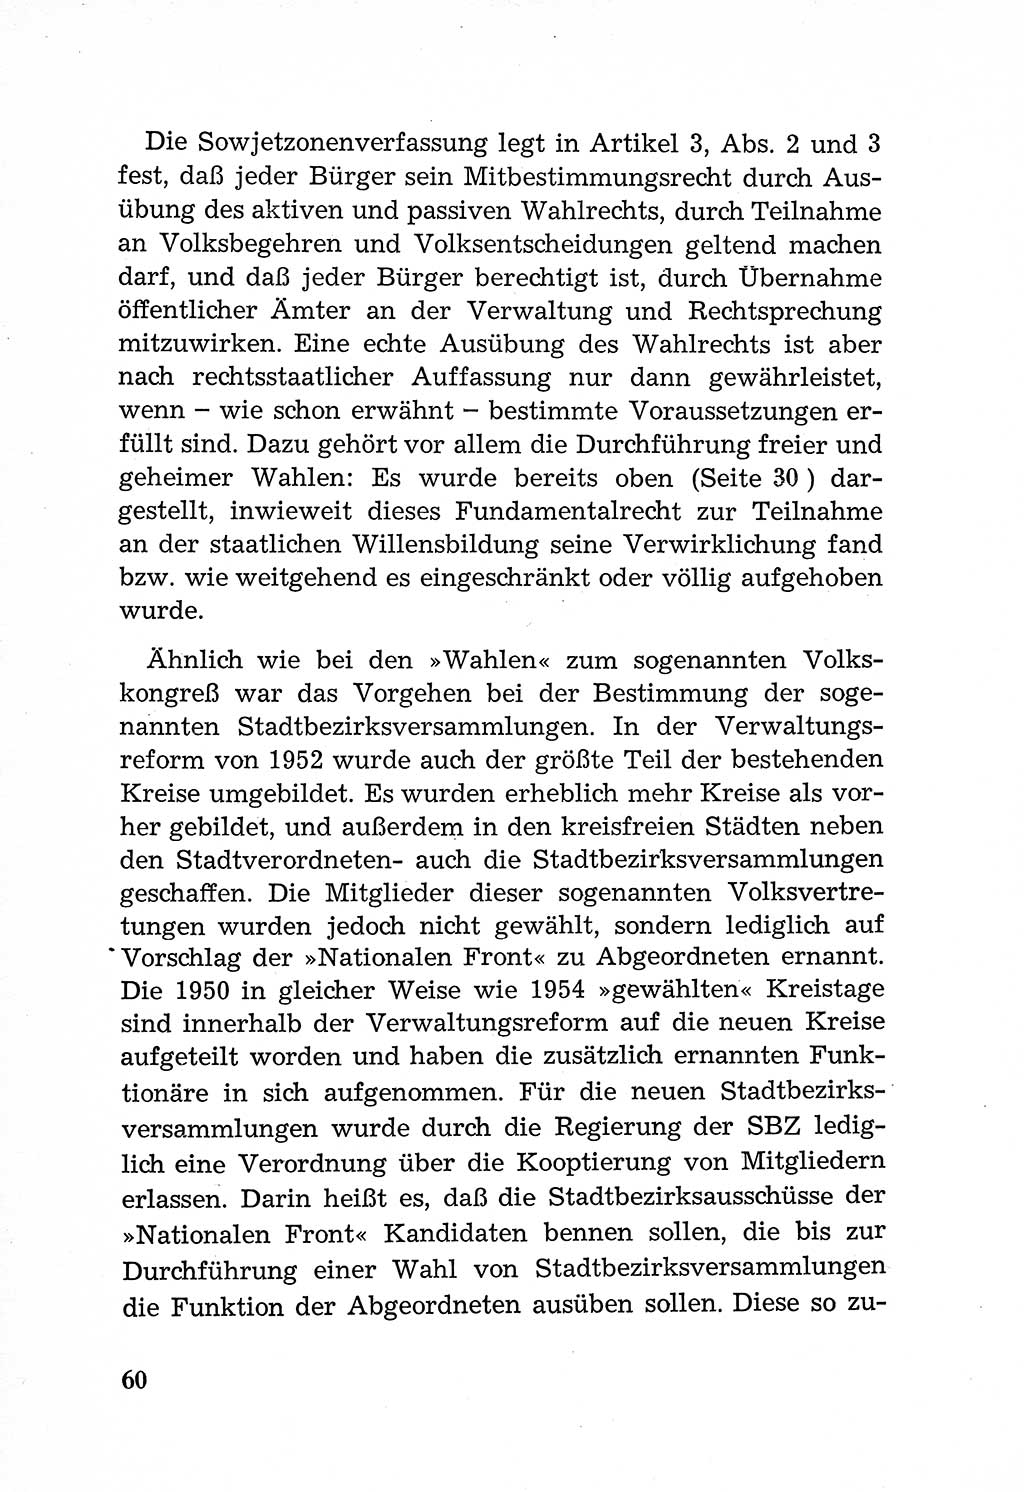 Rechtsstaat in zweierlei Hinsicht, Untersuchungsausschuß freiheitlicher Juristen (UfJ) [Bundesrepublik Deutschland (BRD)] 1956, Seite 60 (R.-St. UfJ BRD 1956, S. 60)